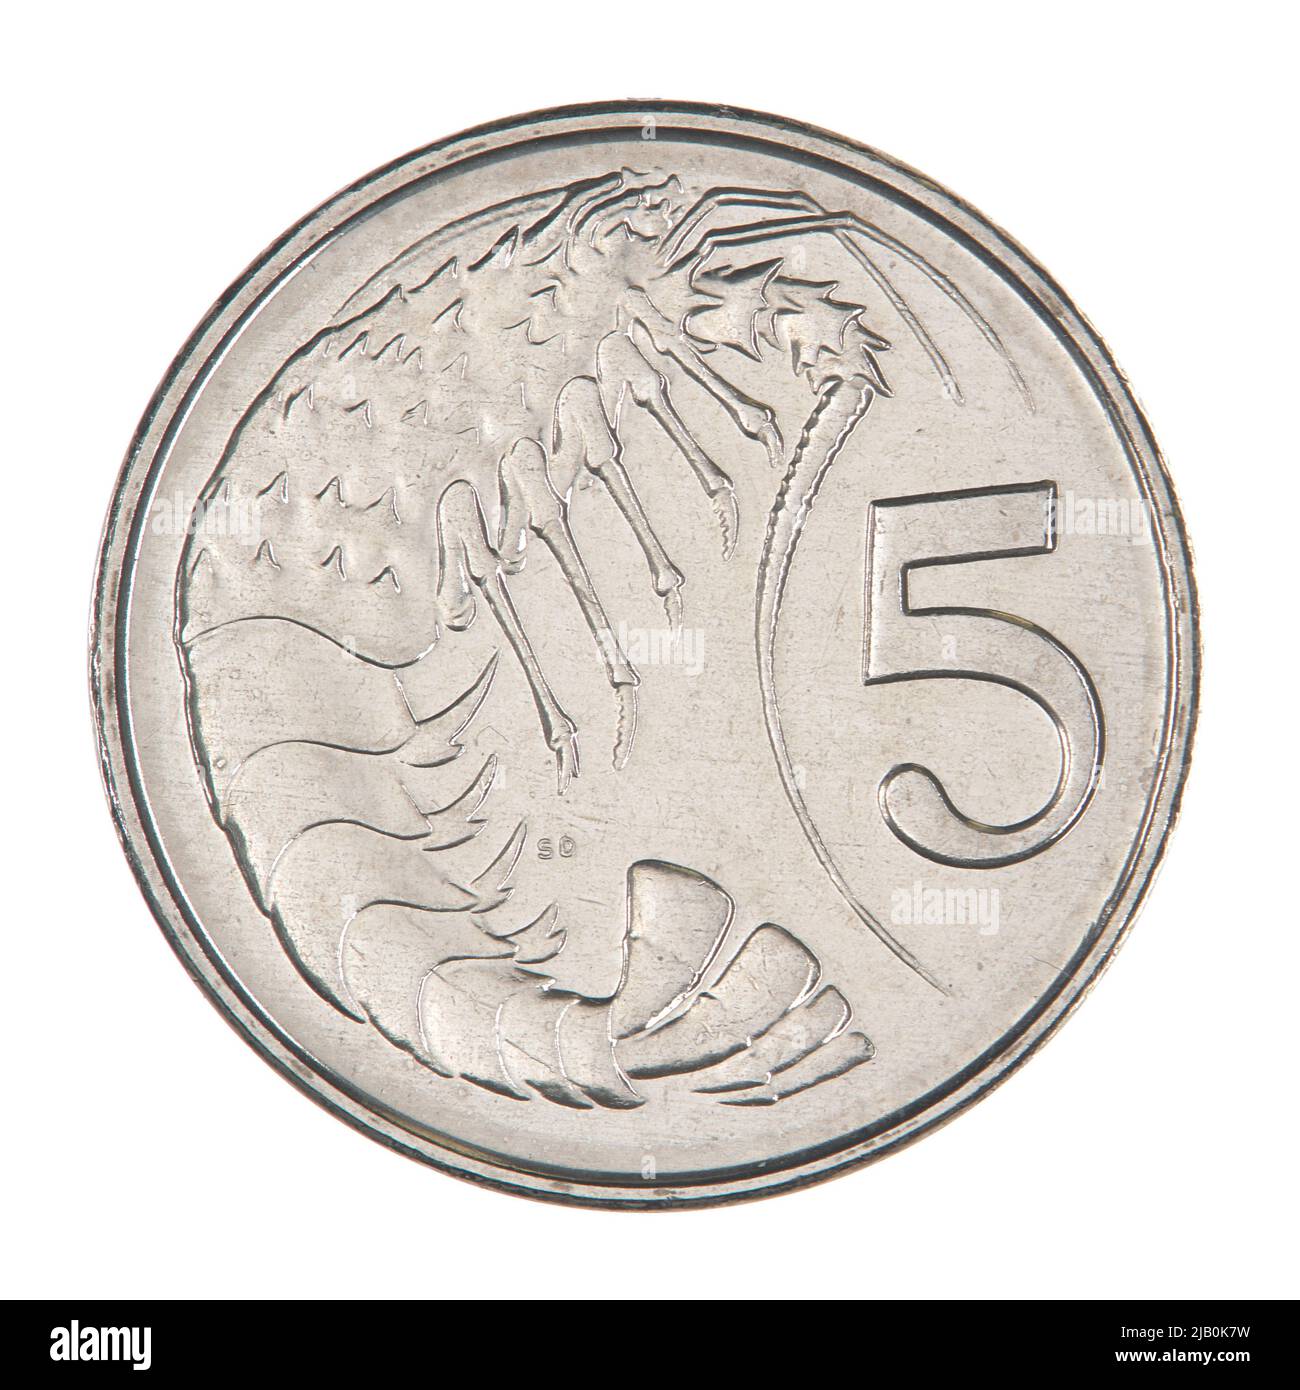 Kajmany, Elżbieta II (1952), 5 centavos; 2002 Valcambi S. A., Chiasso (Suisse), Devlin, Stuart , Rank Broadley, Ian (1952 ) Foto de stock